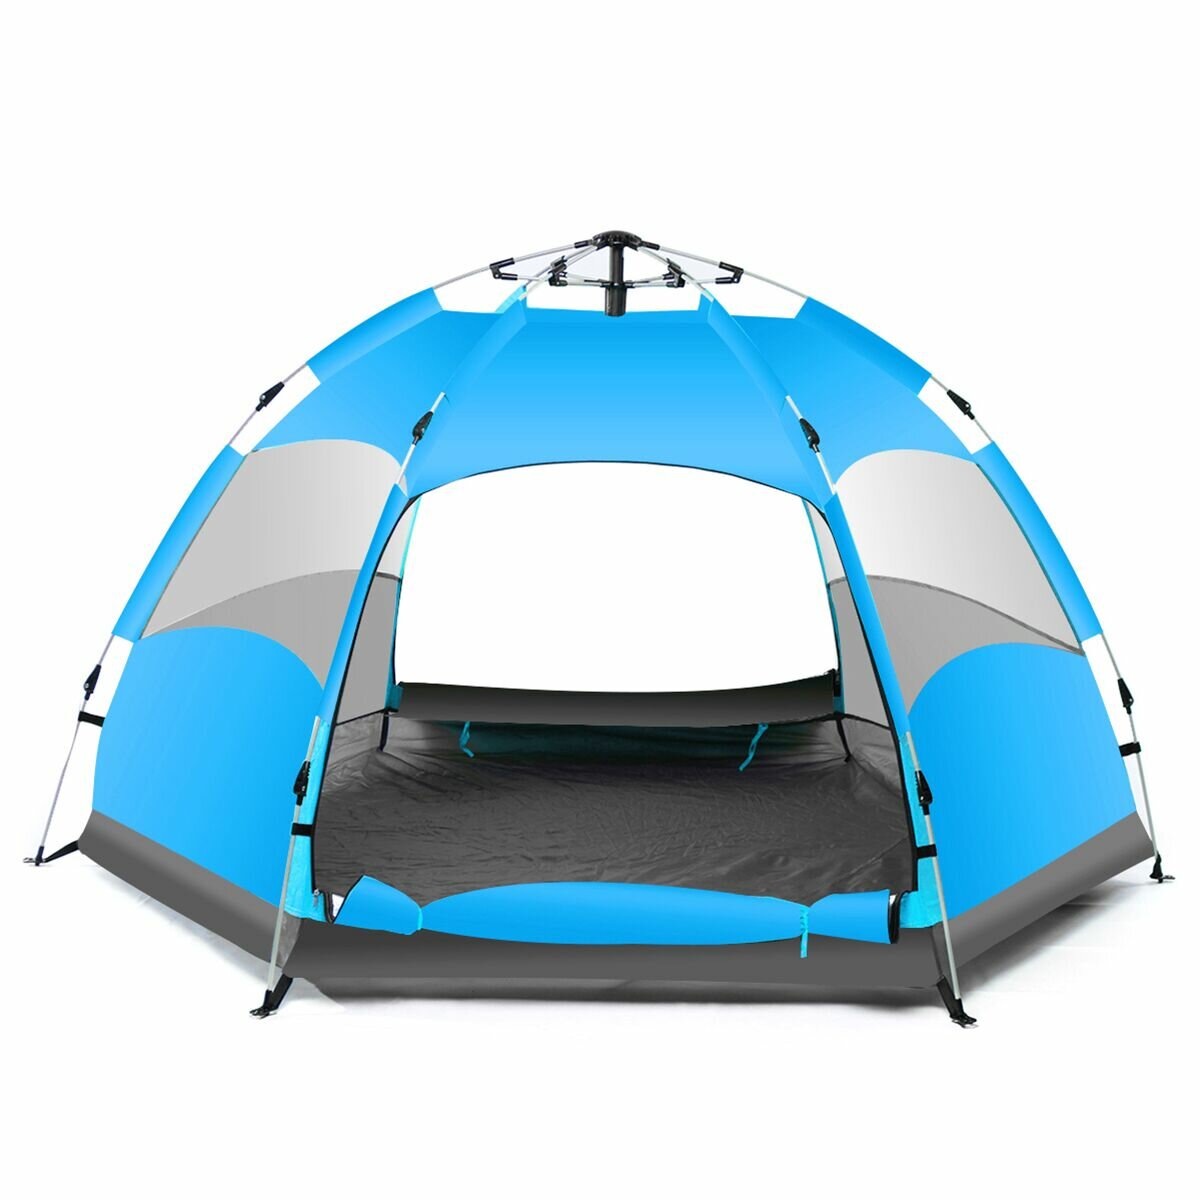 IPRee® Tienda de campaña grande impermeable automática para 5-7 personas para camping y senderismo, base camp al aire libre, color azul/naranja